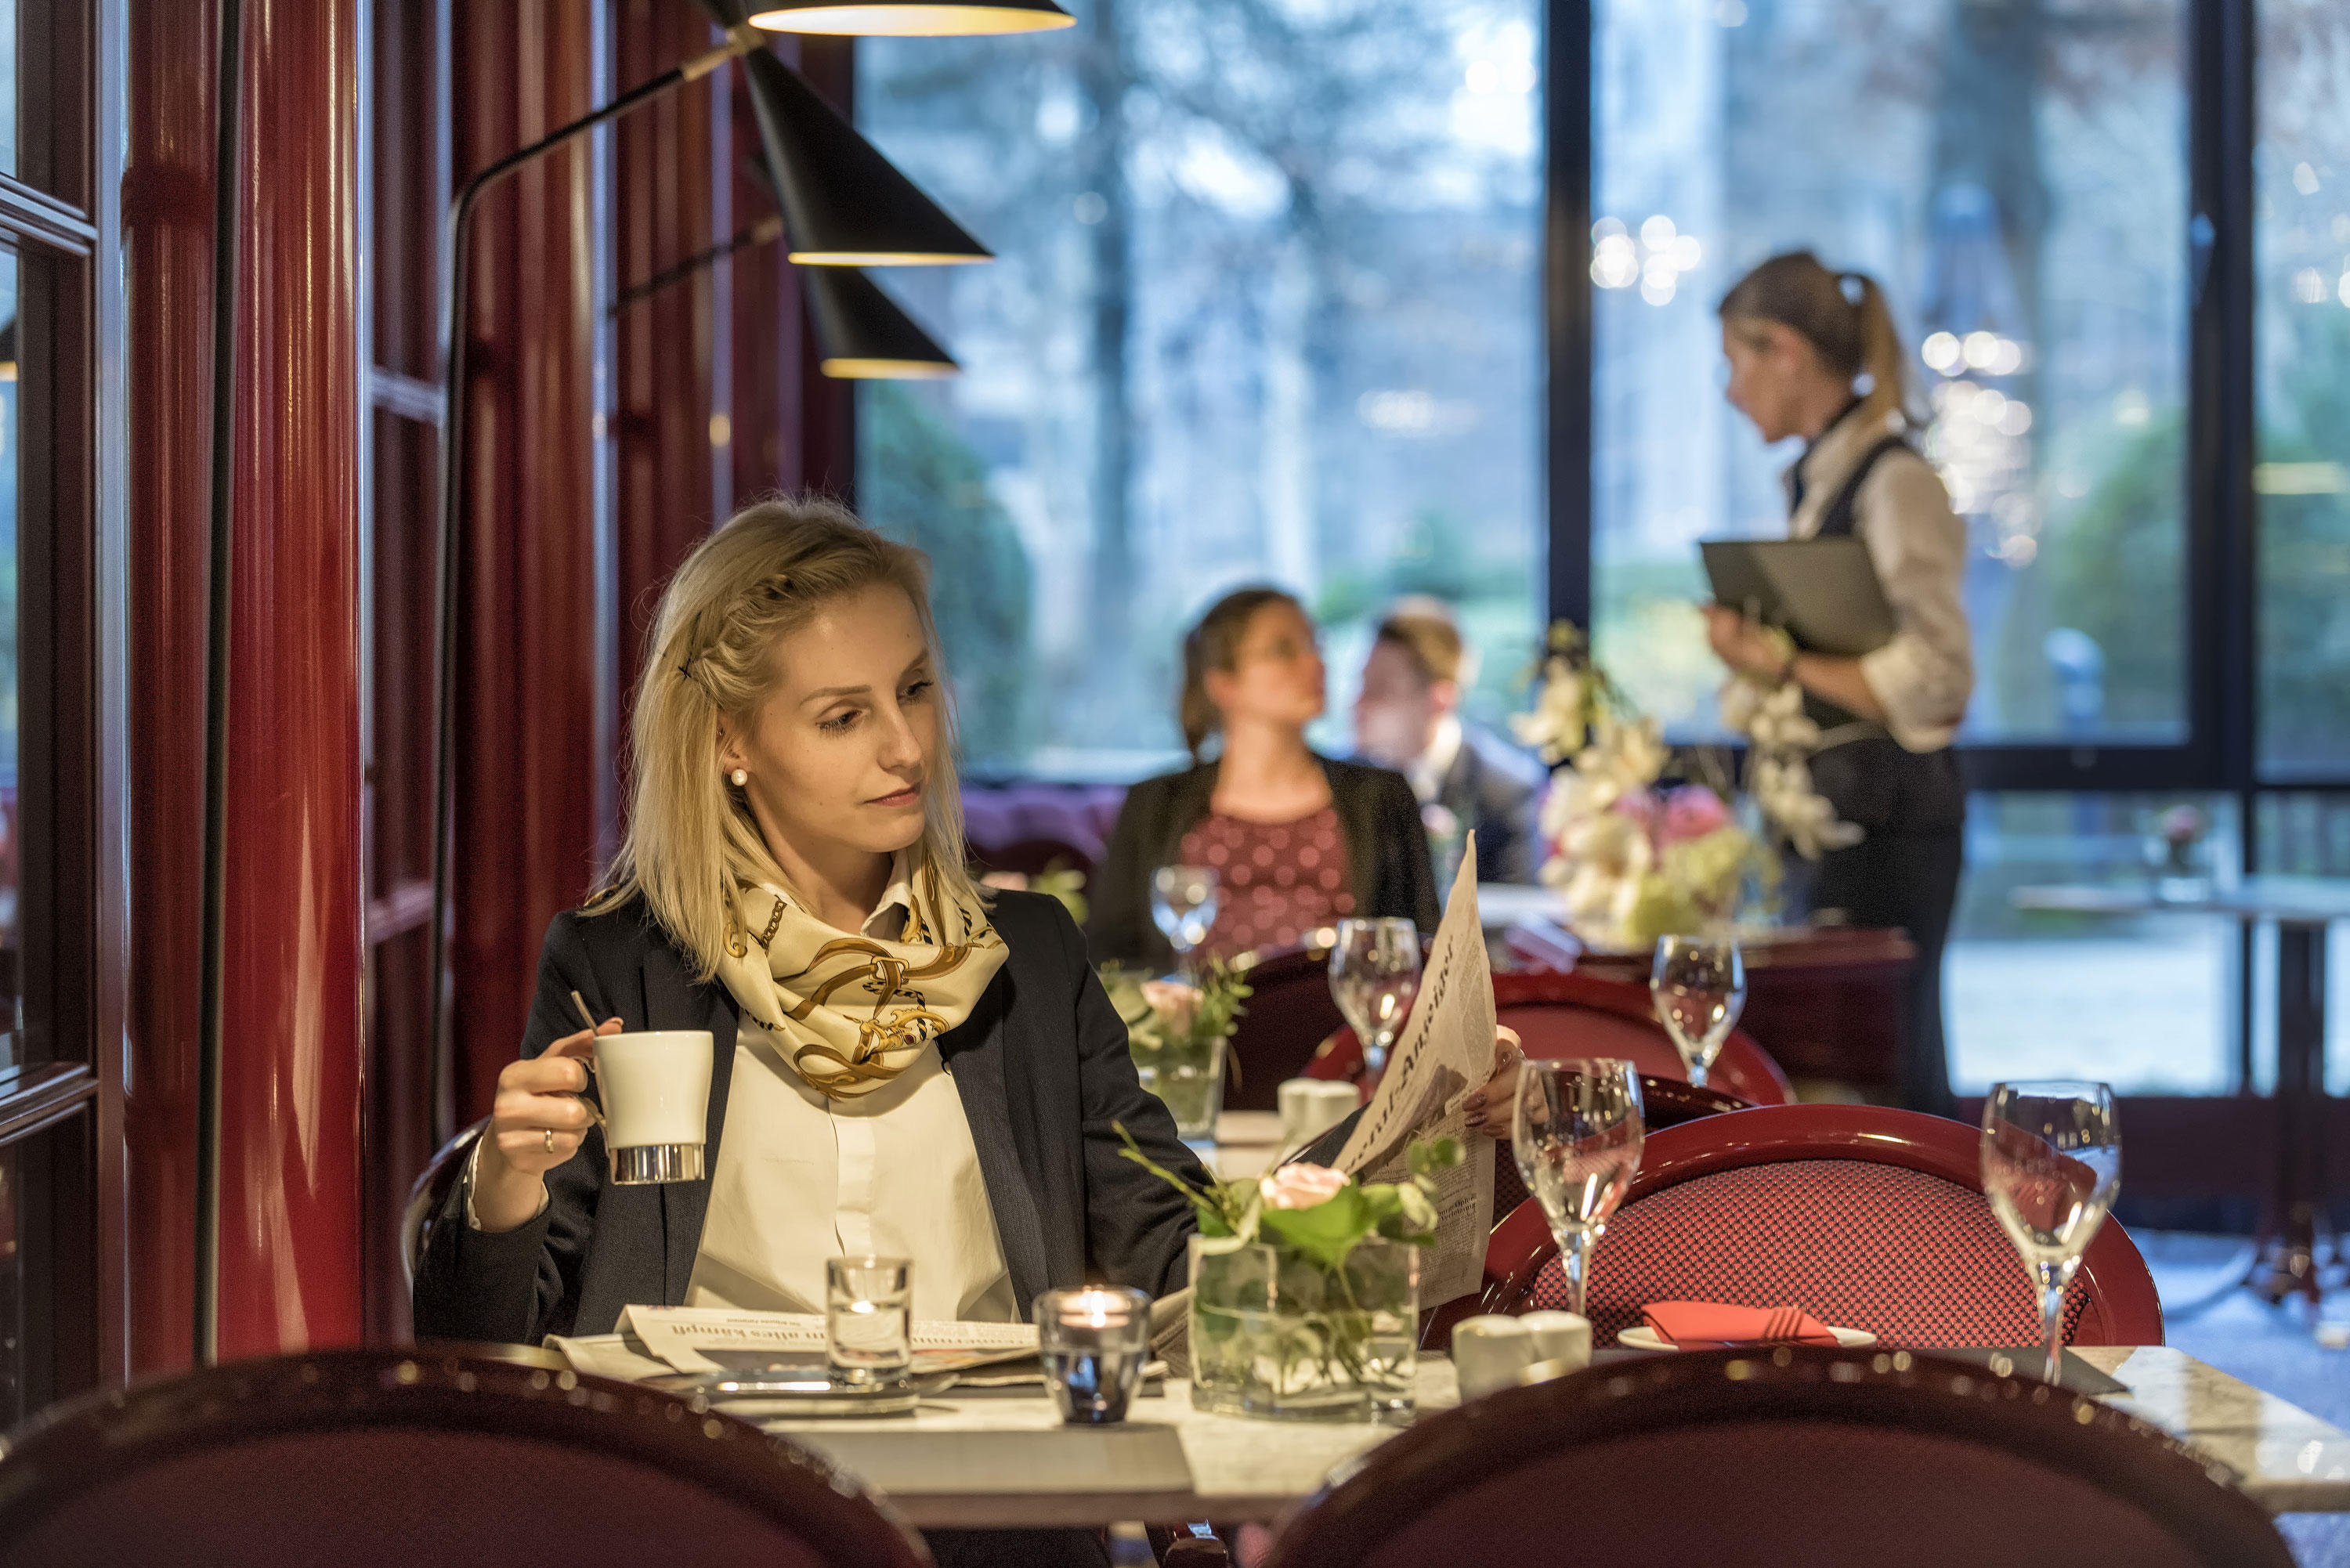 Café Brasserie, Kurt-Georg-Kiesinger Allee 1 in Bonn